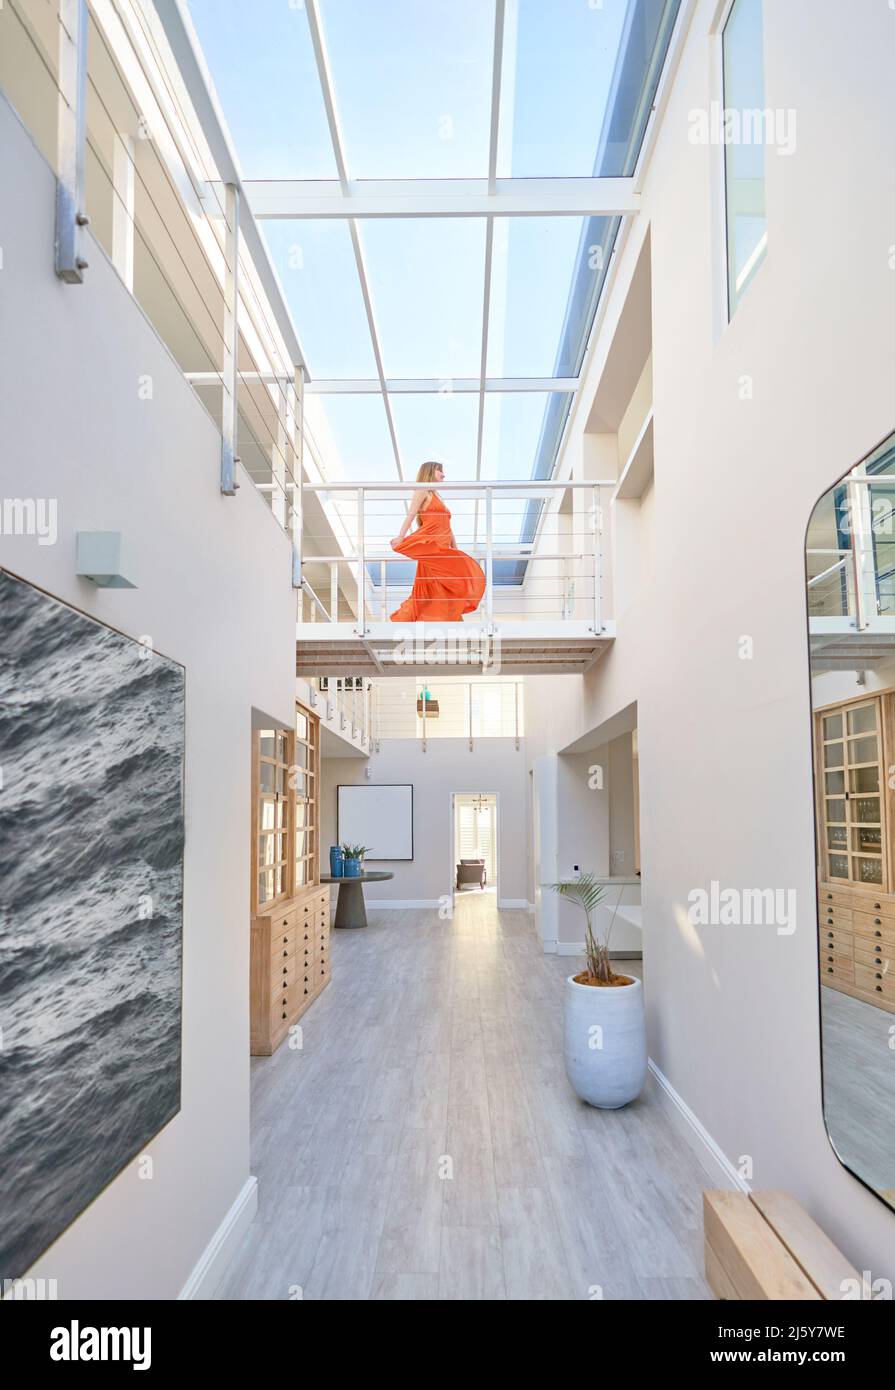 Donna in abito arancione che cammina attraverso la passerella in casa moderna Foto Stock